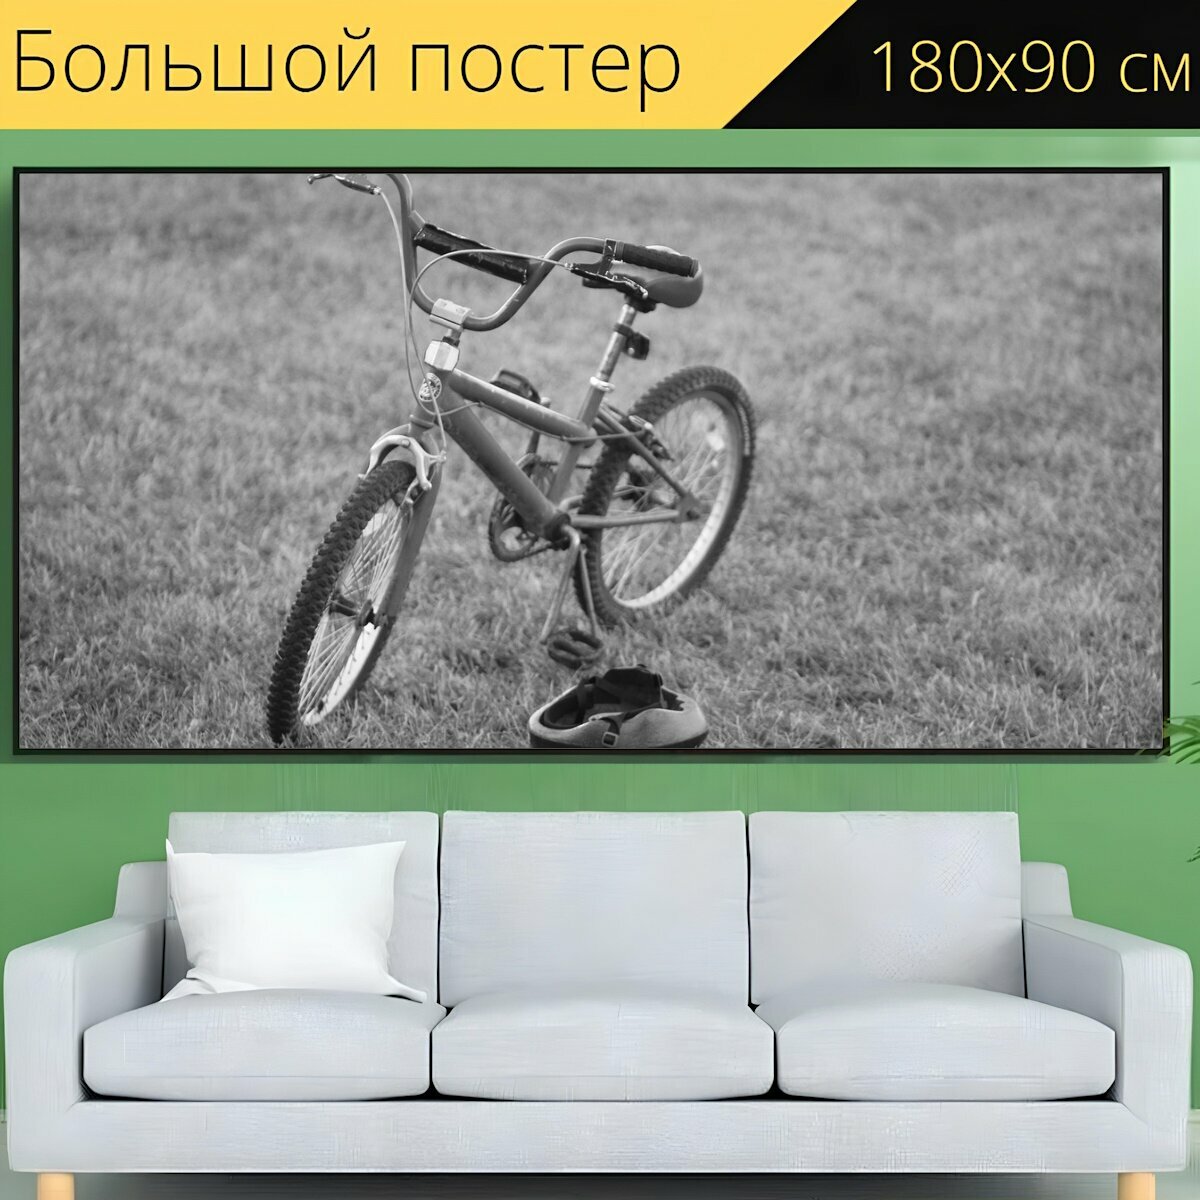 Большой постер "Велосипед, поле, трава" 180 x 90 см. для интерьера